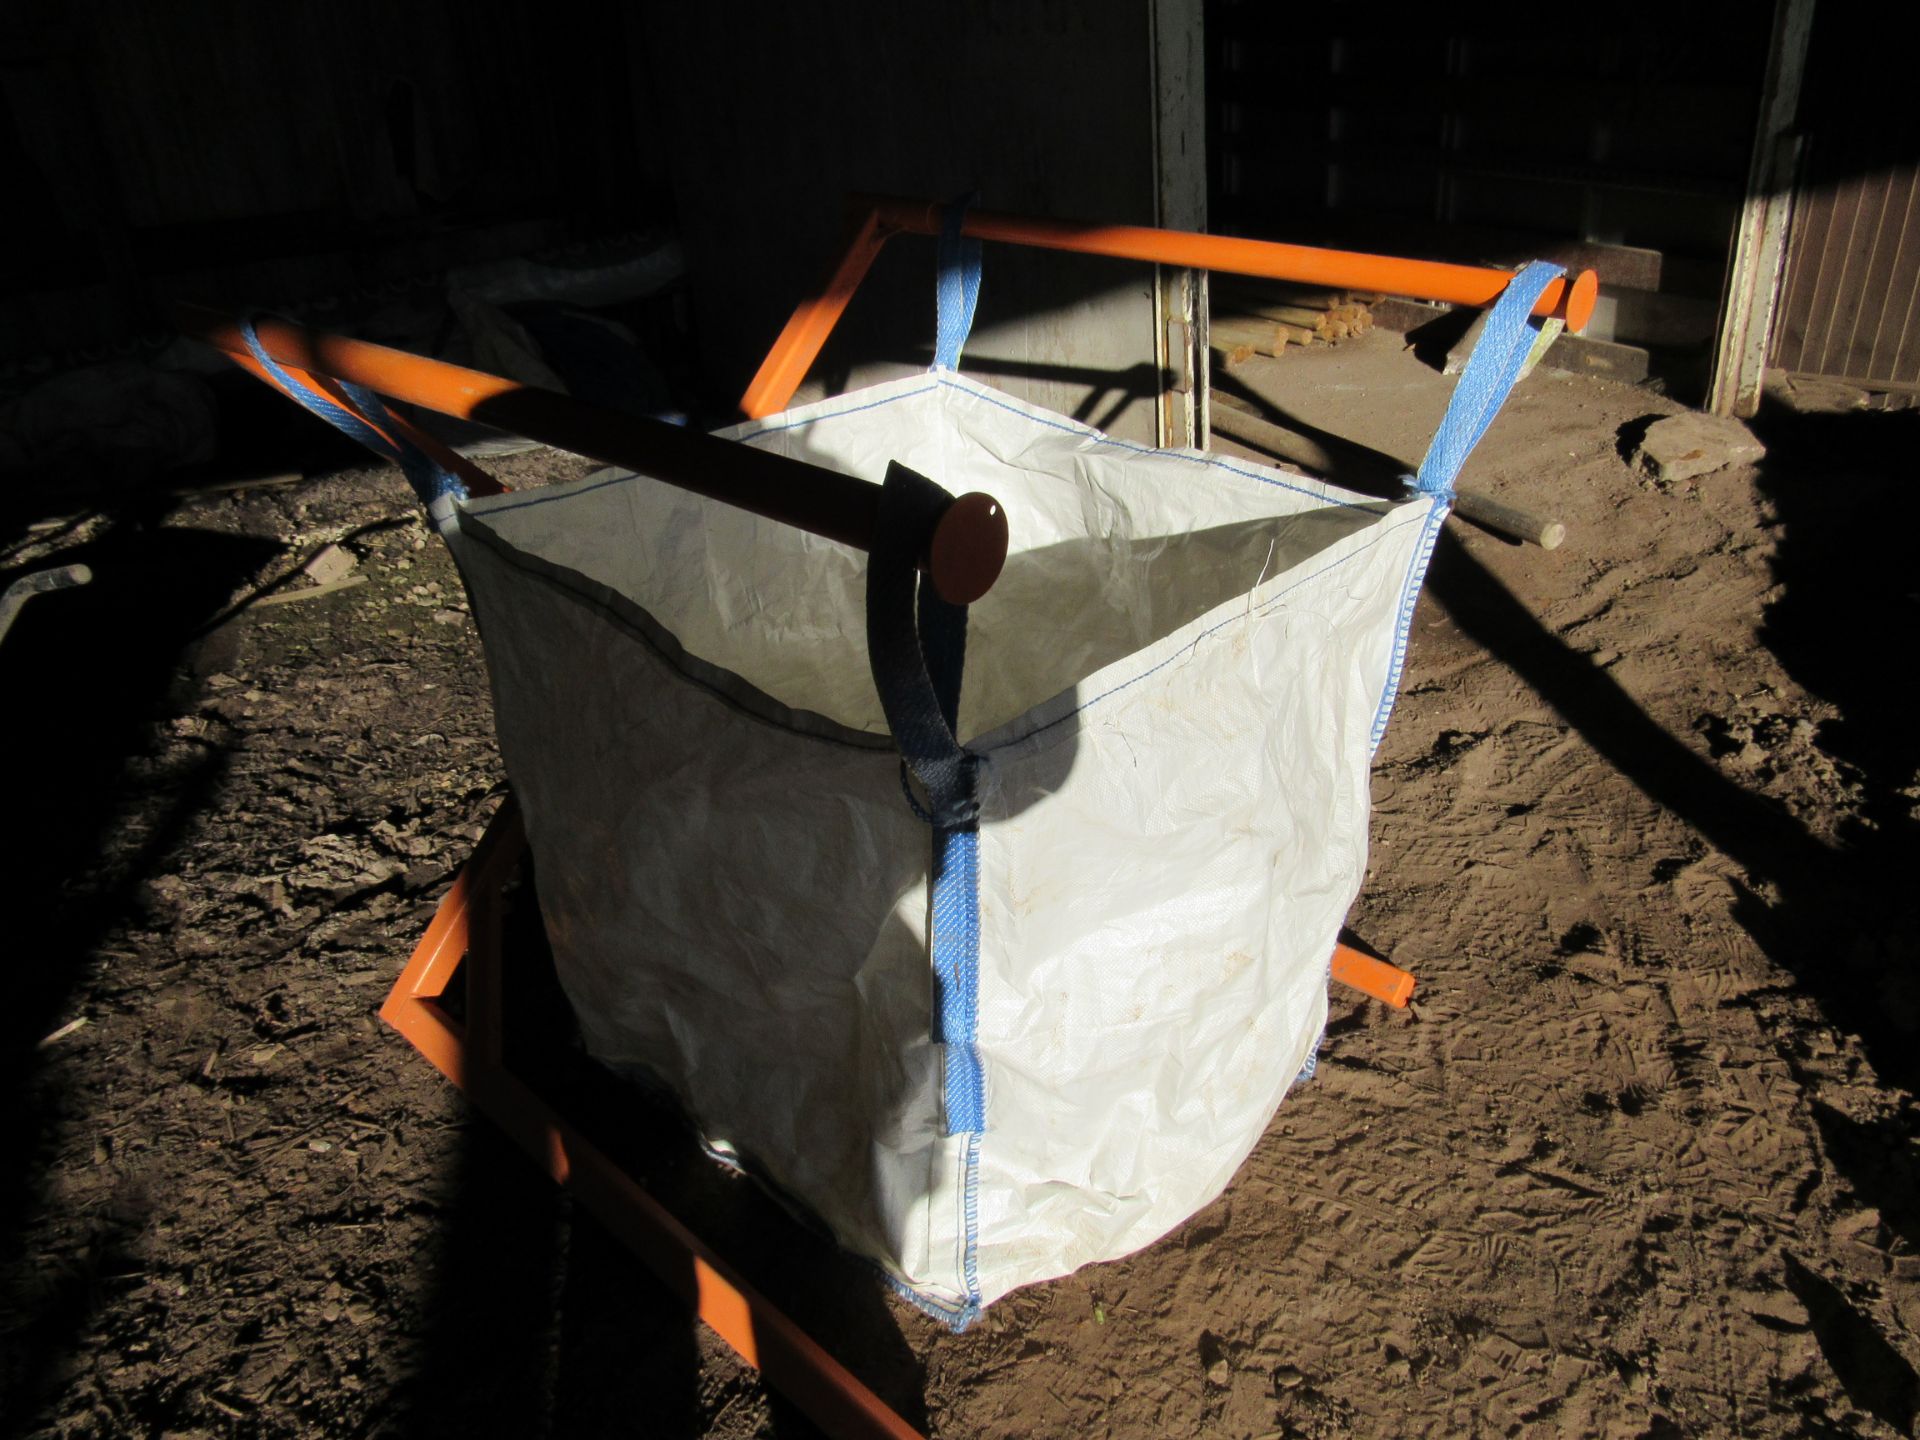 Portable foldaway bulk bag stand - Image 5 of 7